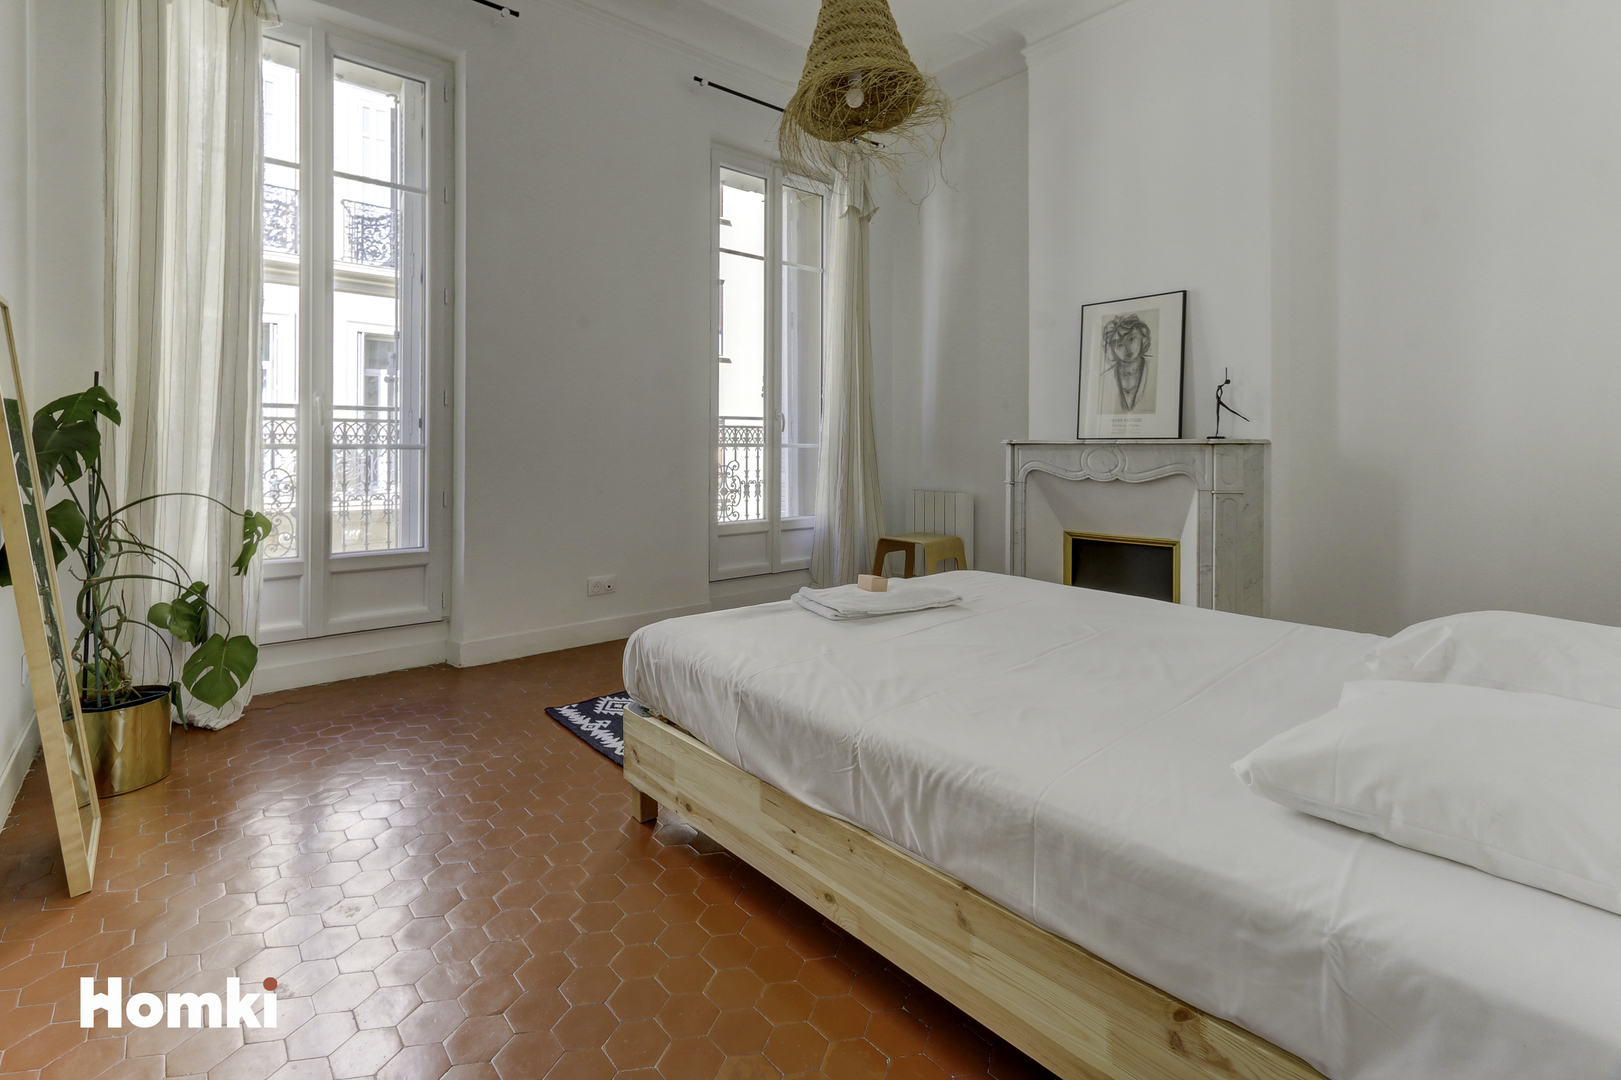 Homki - Vente Appartement  de 89.0 m² à Marseille 13001